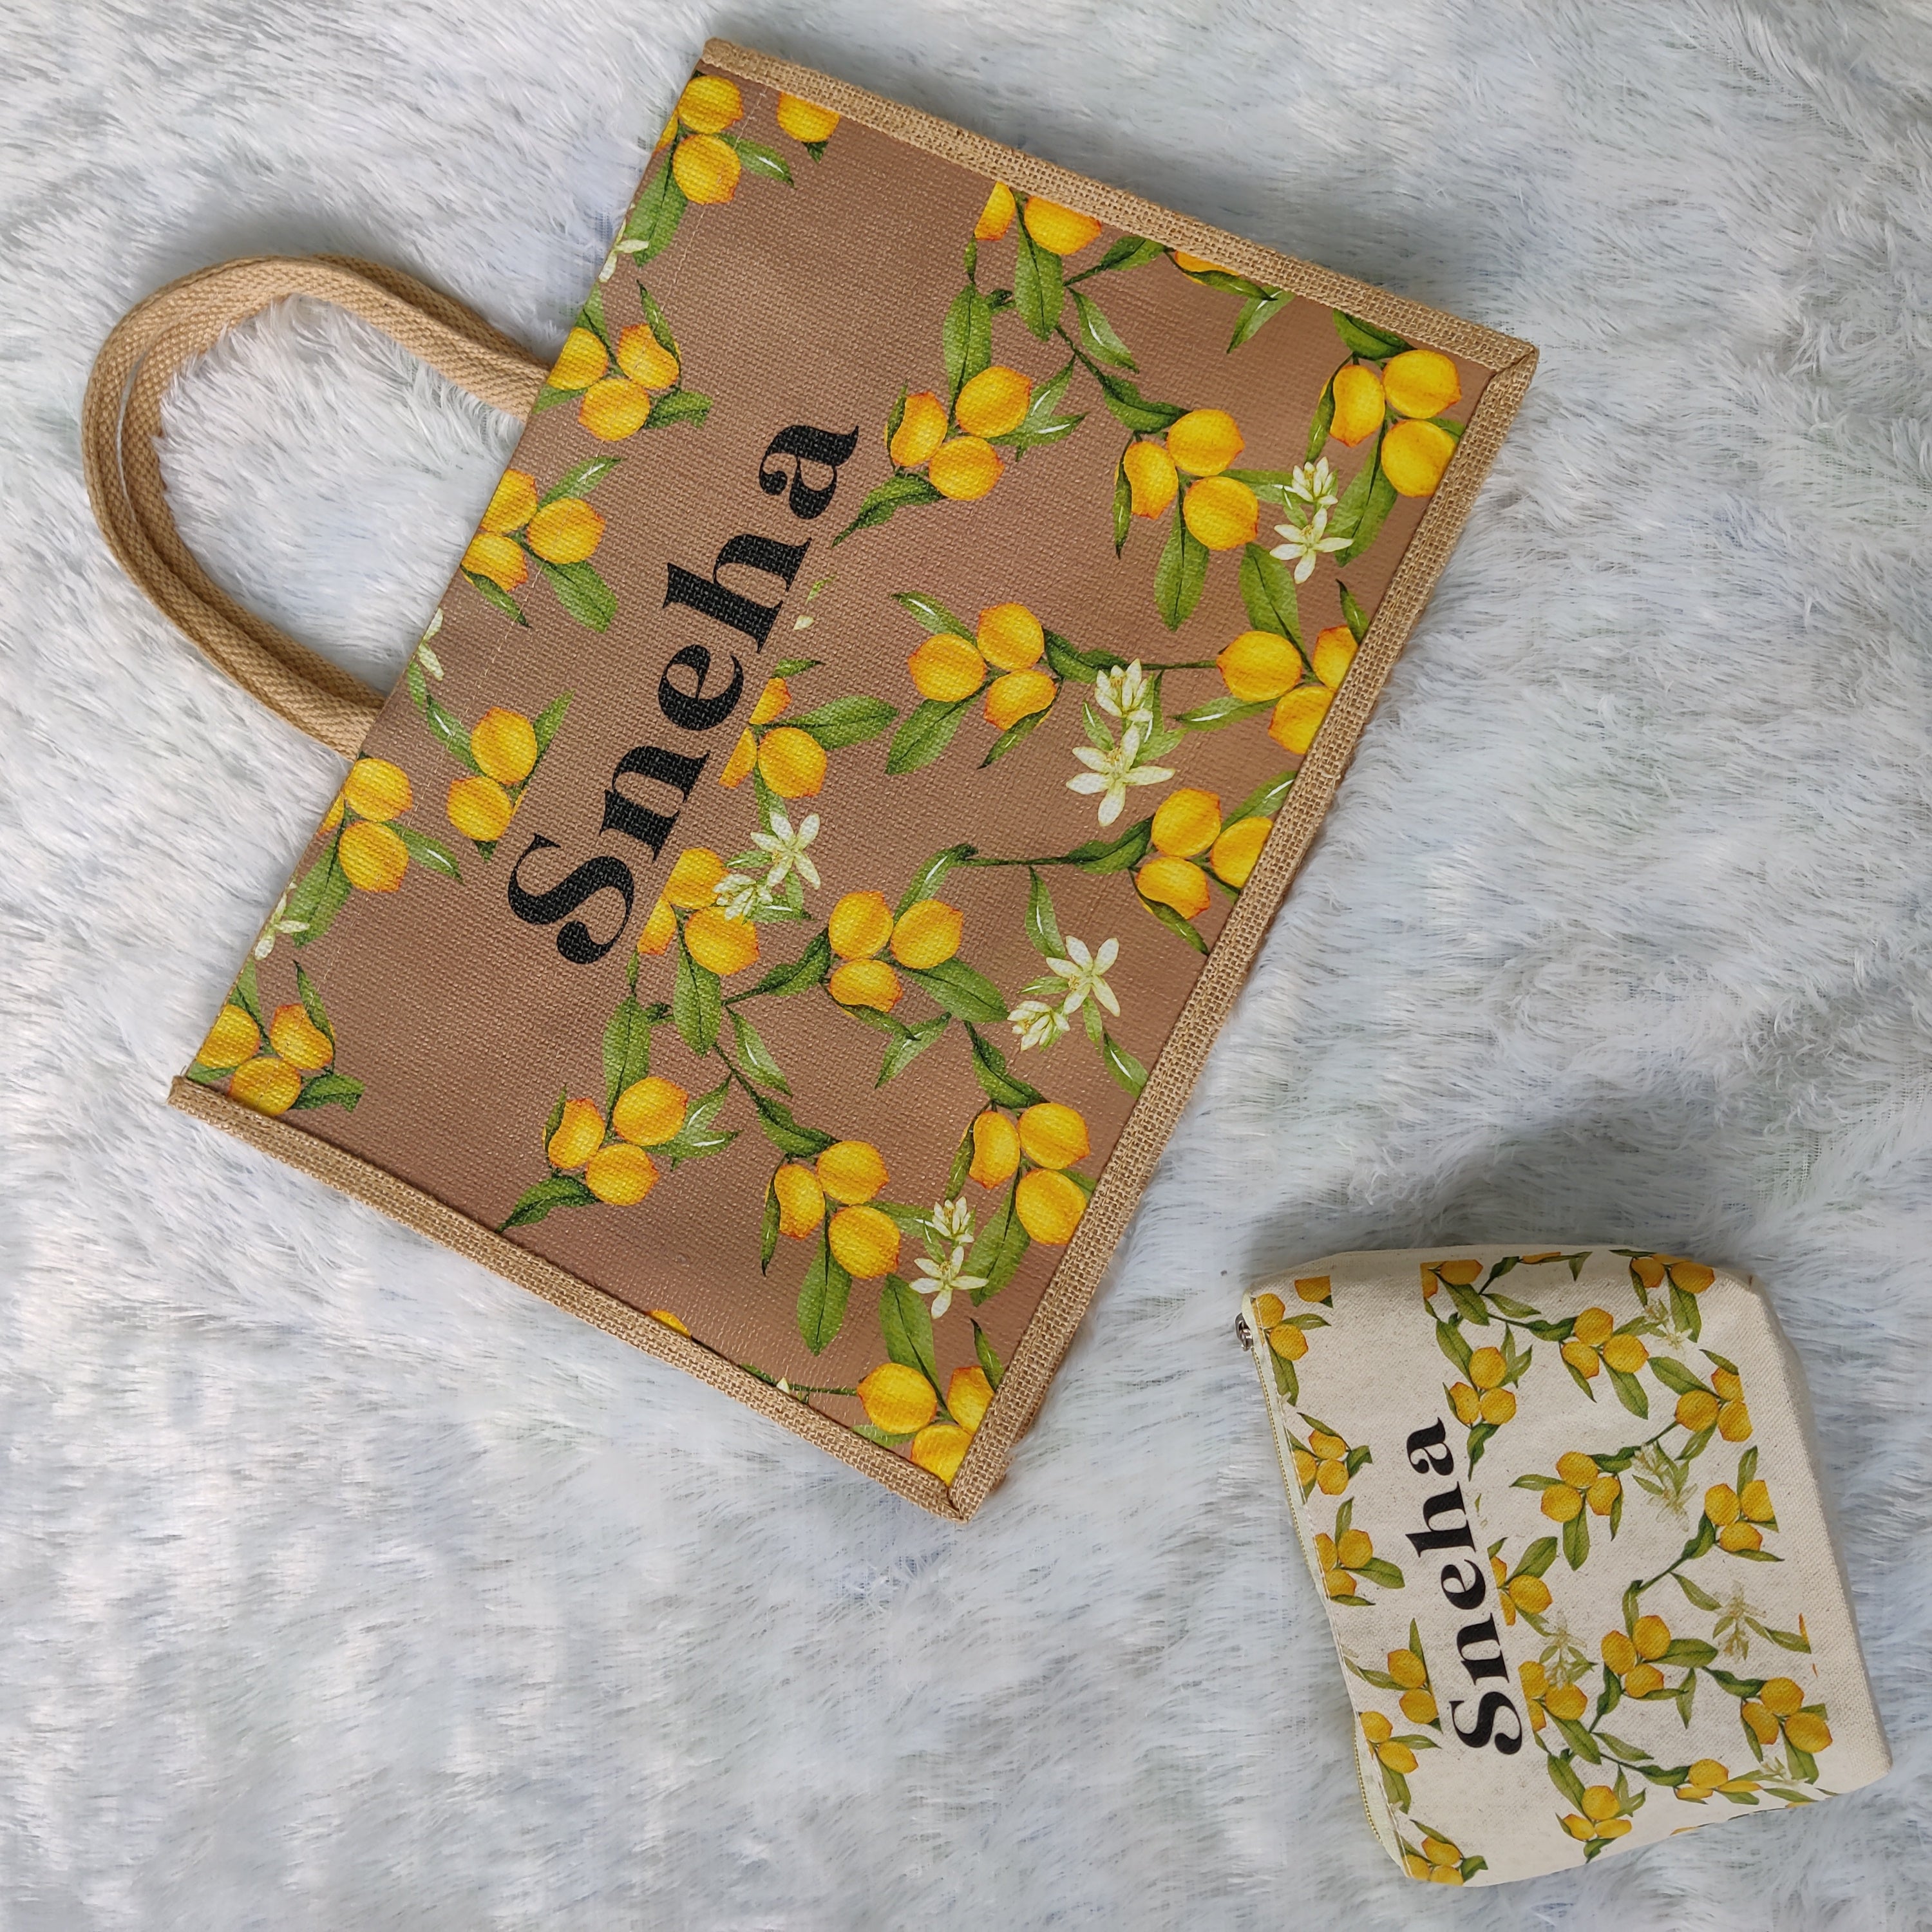 Printed Tote Bag And Pouch Set - Amalfi Lemon